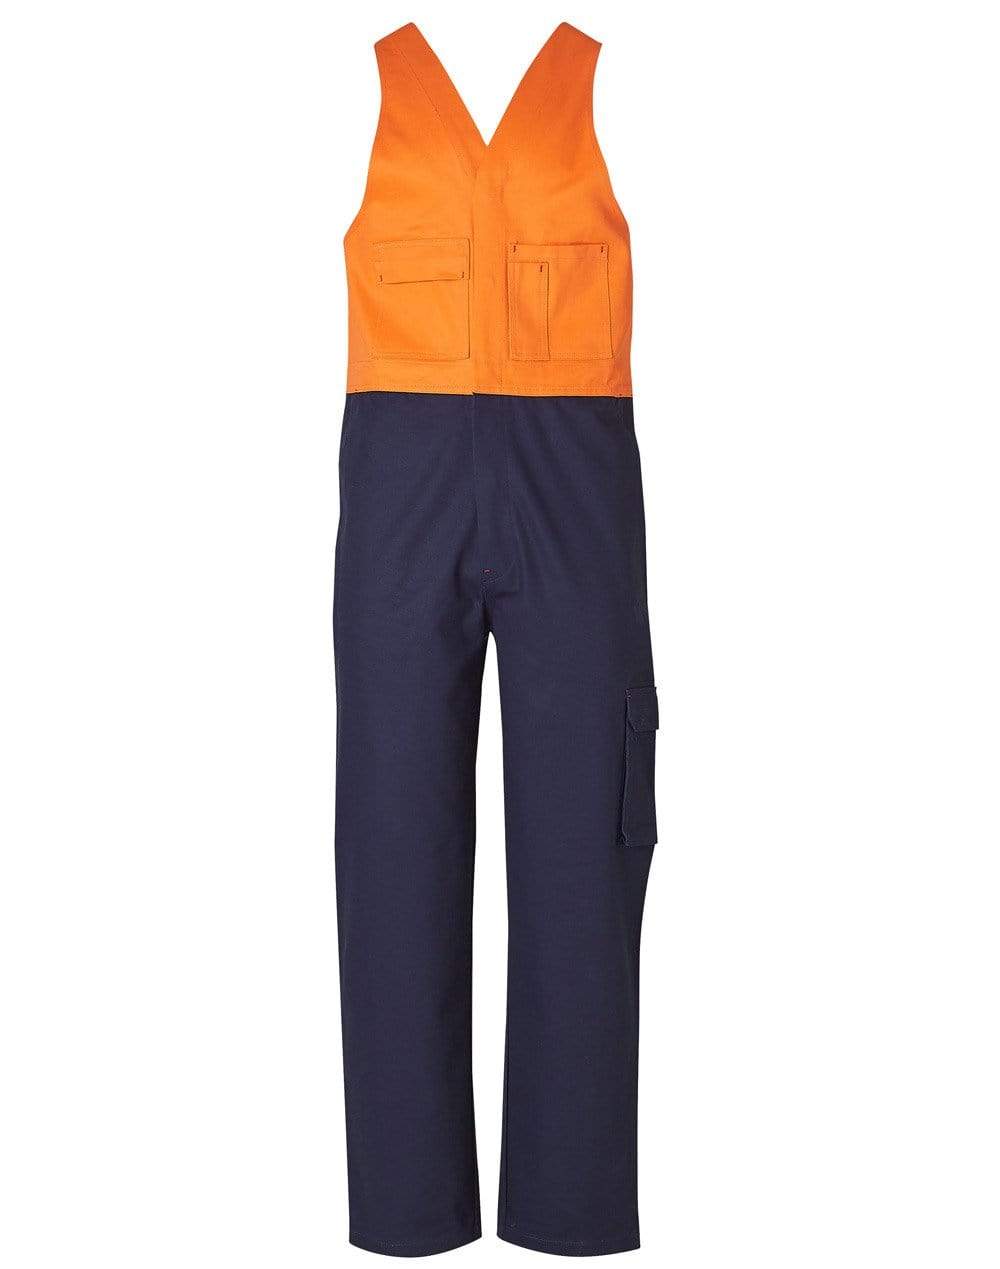 Men's Overall Regular Size SW201 Work Wear Australian Industrial Wear 77R Orange/Navy 